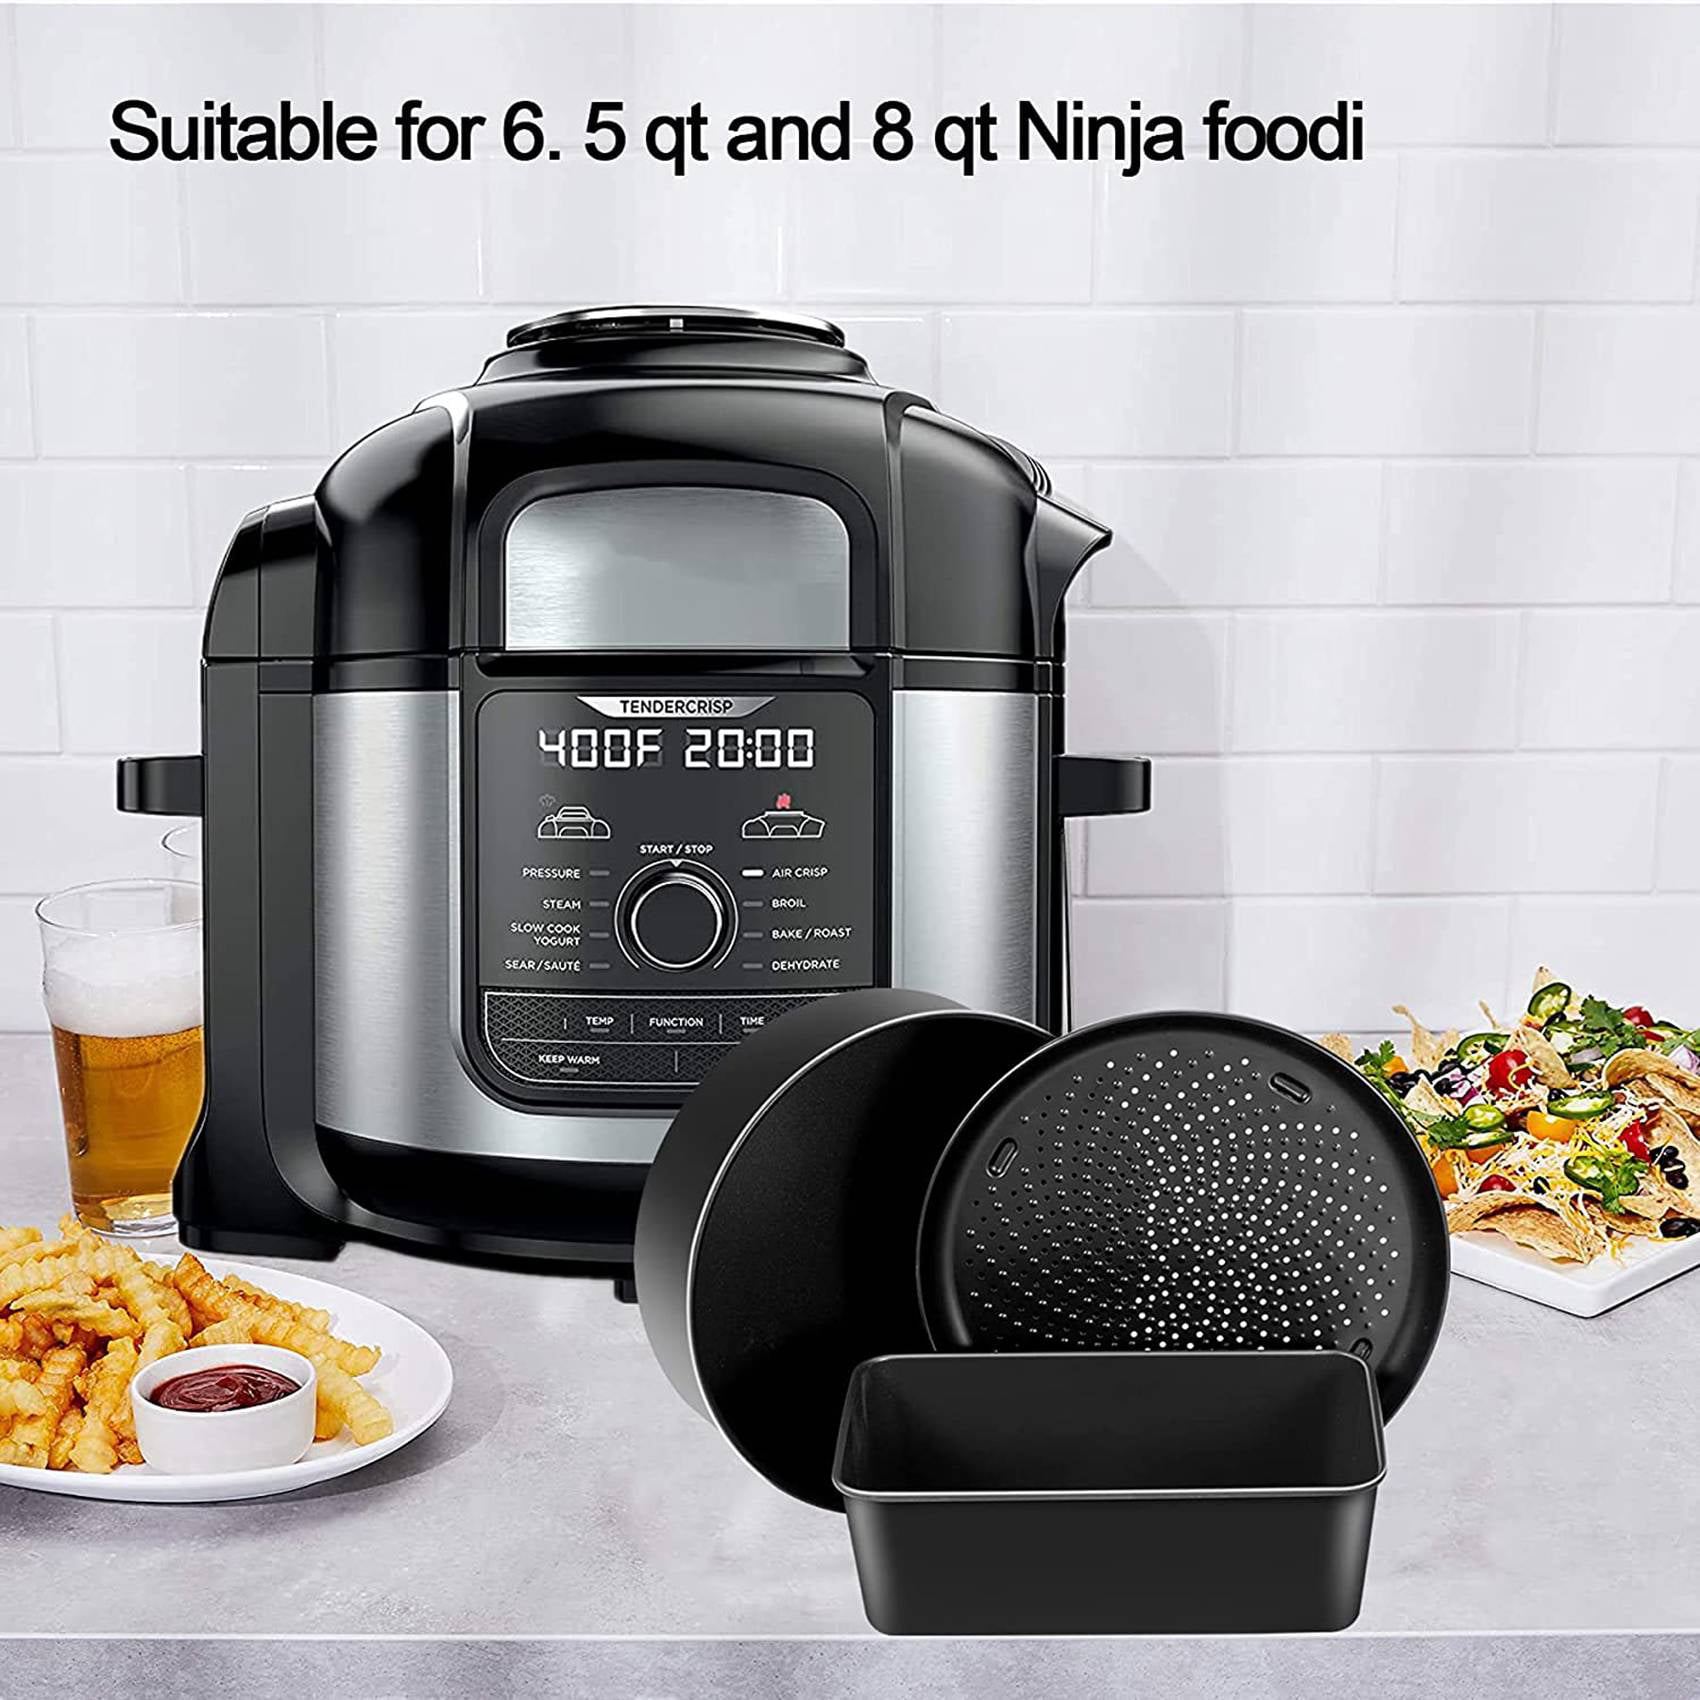 Baking Set for Ninja Foodi 6.5, 8Qt,Accessories for Instant Pot  8Qt,Nonstick Bakeware Set Compatible with Ninja Foodi